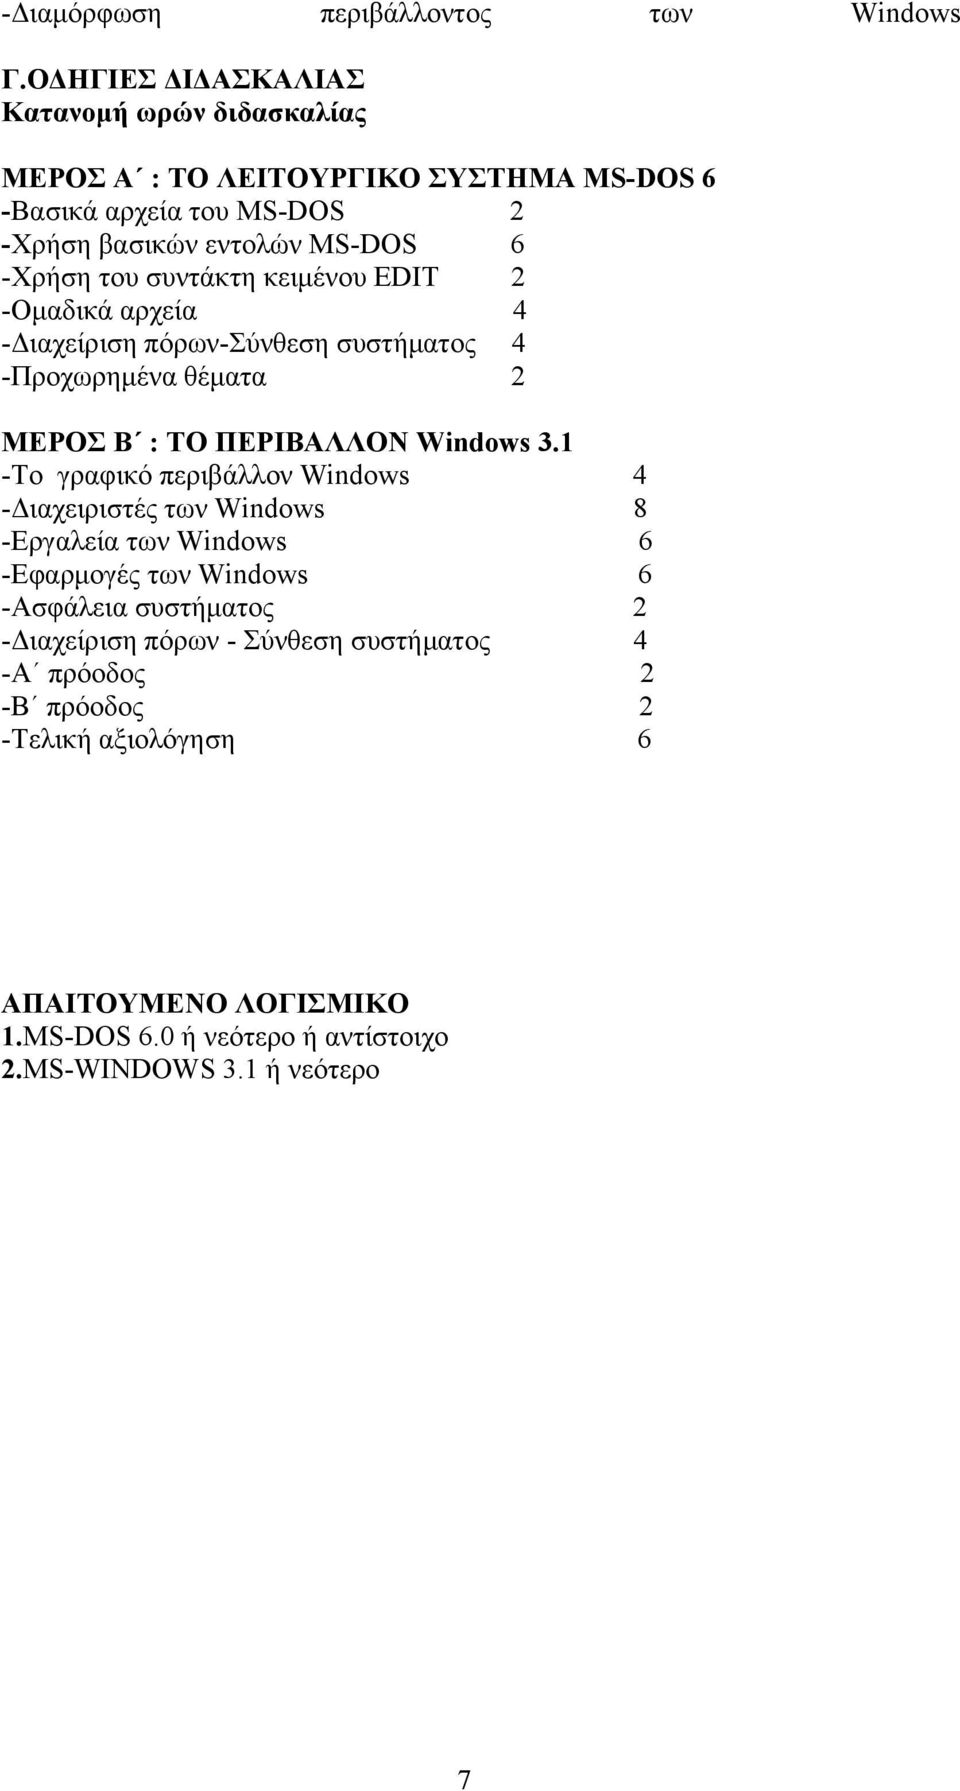 συντάκτη κειμένου EDIT 2 -Ομαδικά αρχεία 4 -Διαχείριση πόρων-σύνθεση συστήματος 4 -Προχωρημένα θέματα 2 ΜΕΡΟΣ Β : ΤΟ ΠΕΡΙΒΑΛΛΟΝ Windows 3.